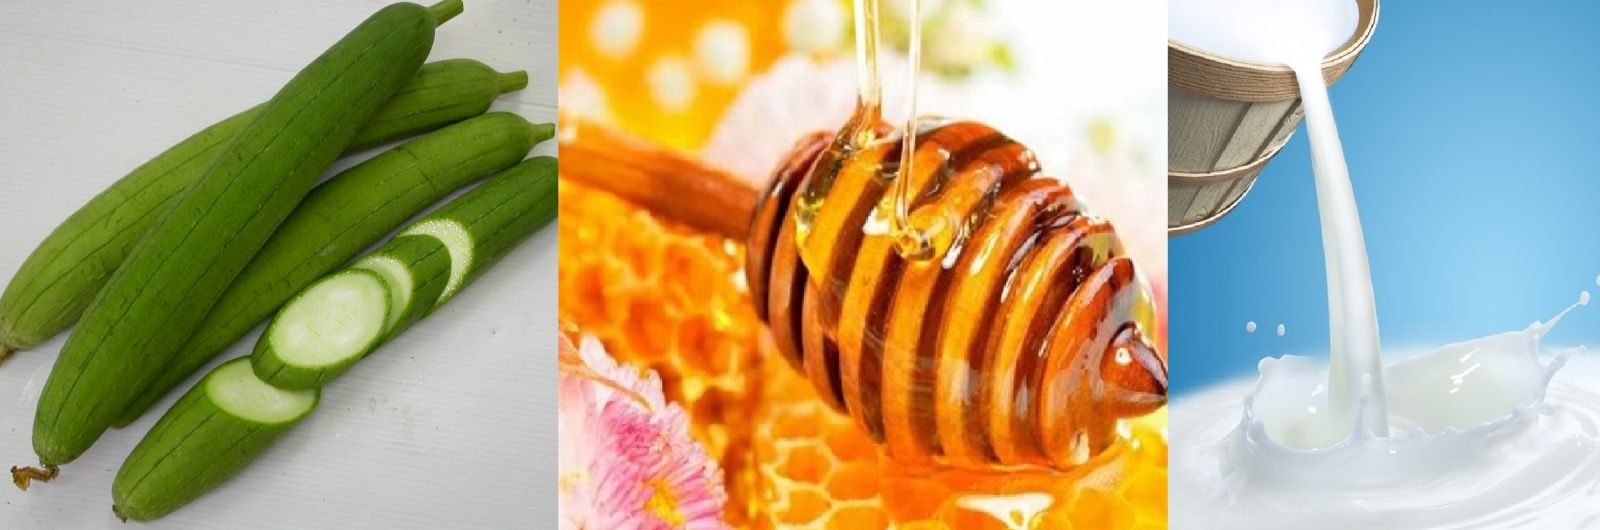 Cách làm đẹp da từ mướp và mật ong